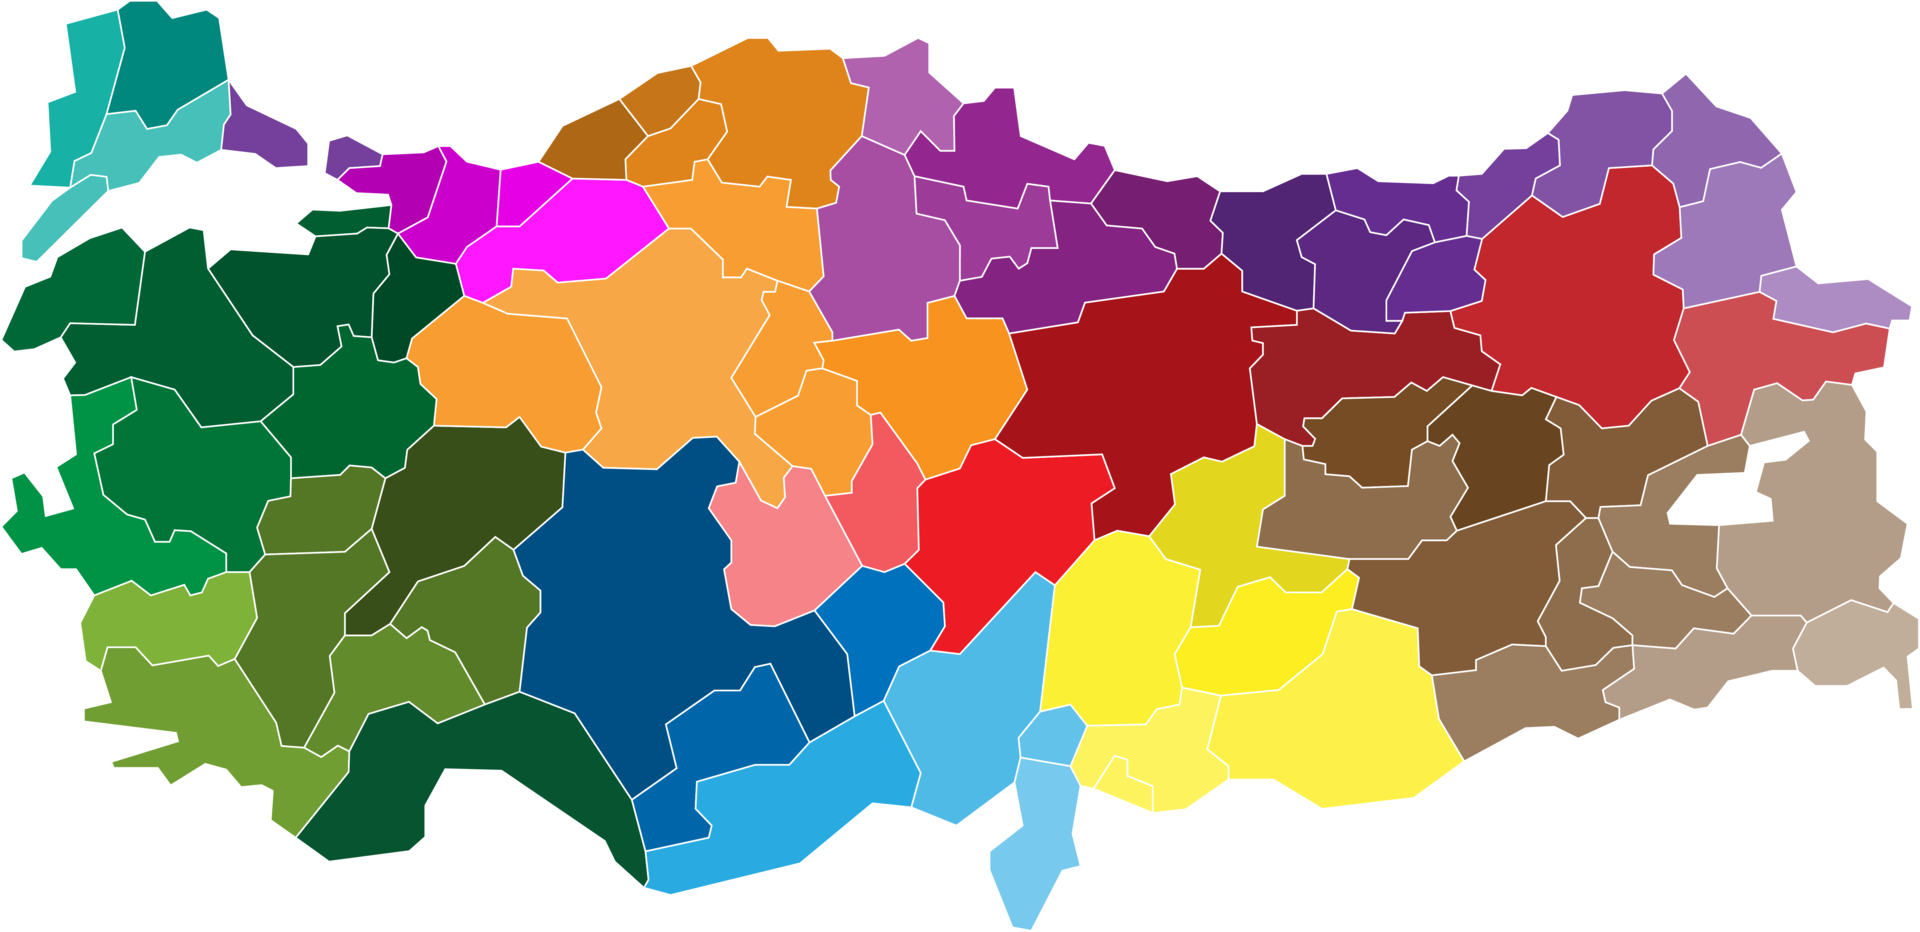 mapa político da turquia dividir por estado png